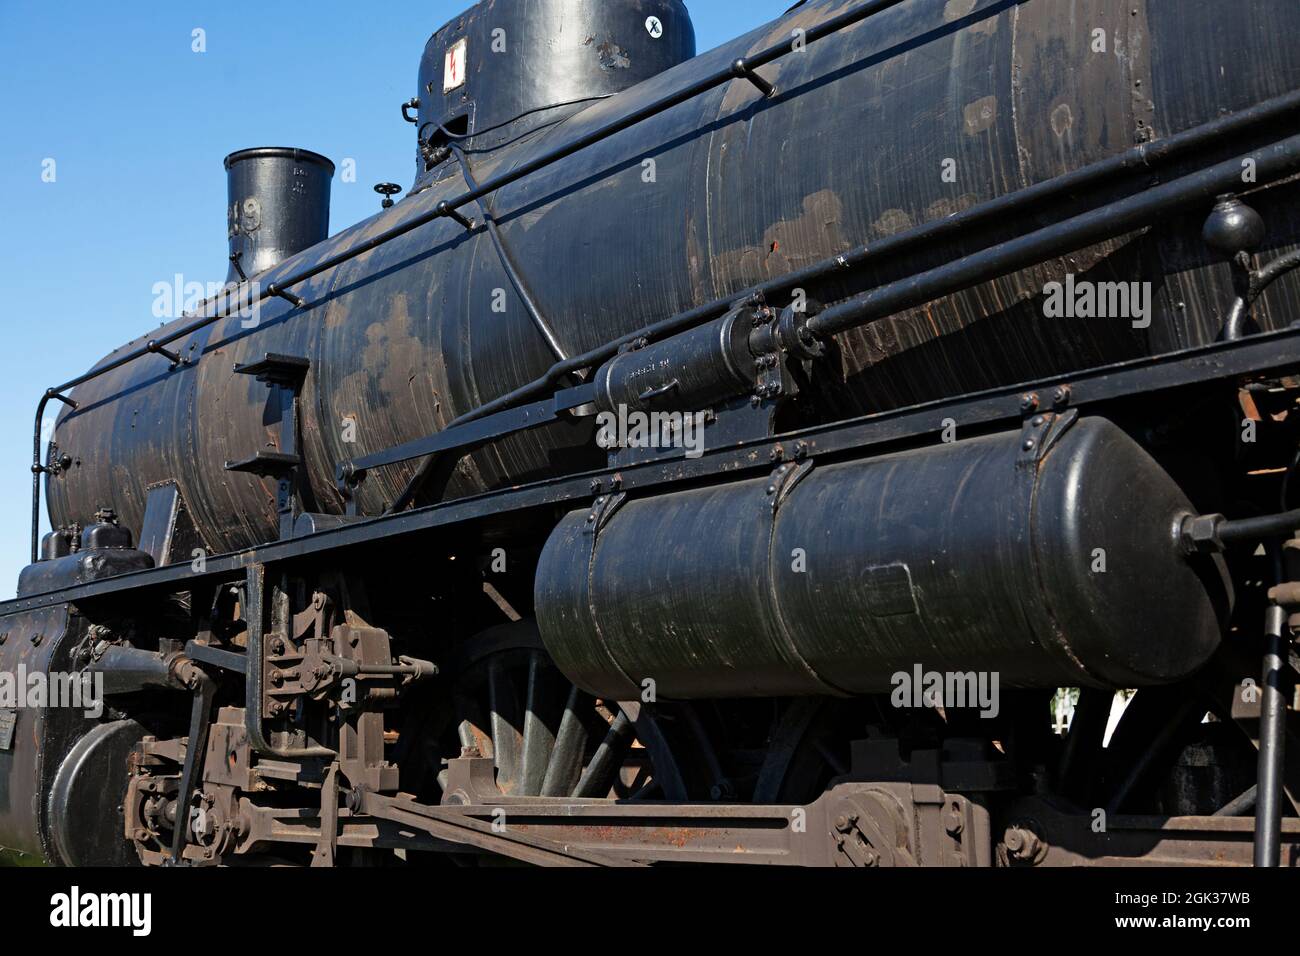 Vannas, Norrland Sweden - August 13, 2021: part of an old black steam locomotive Stock Photo